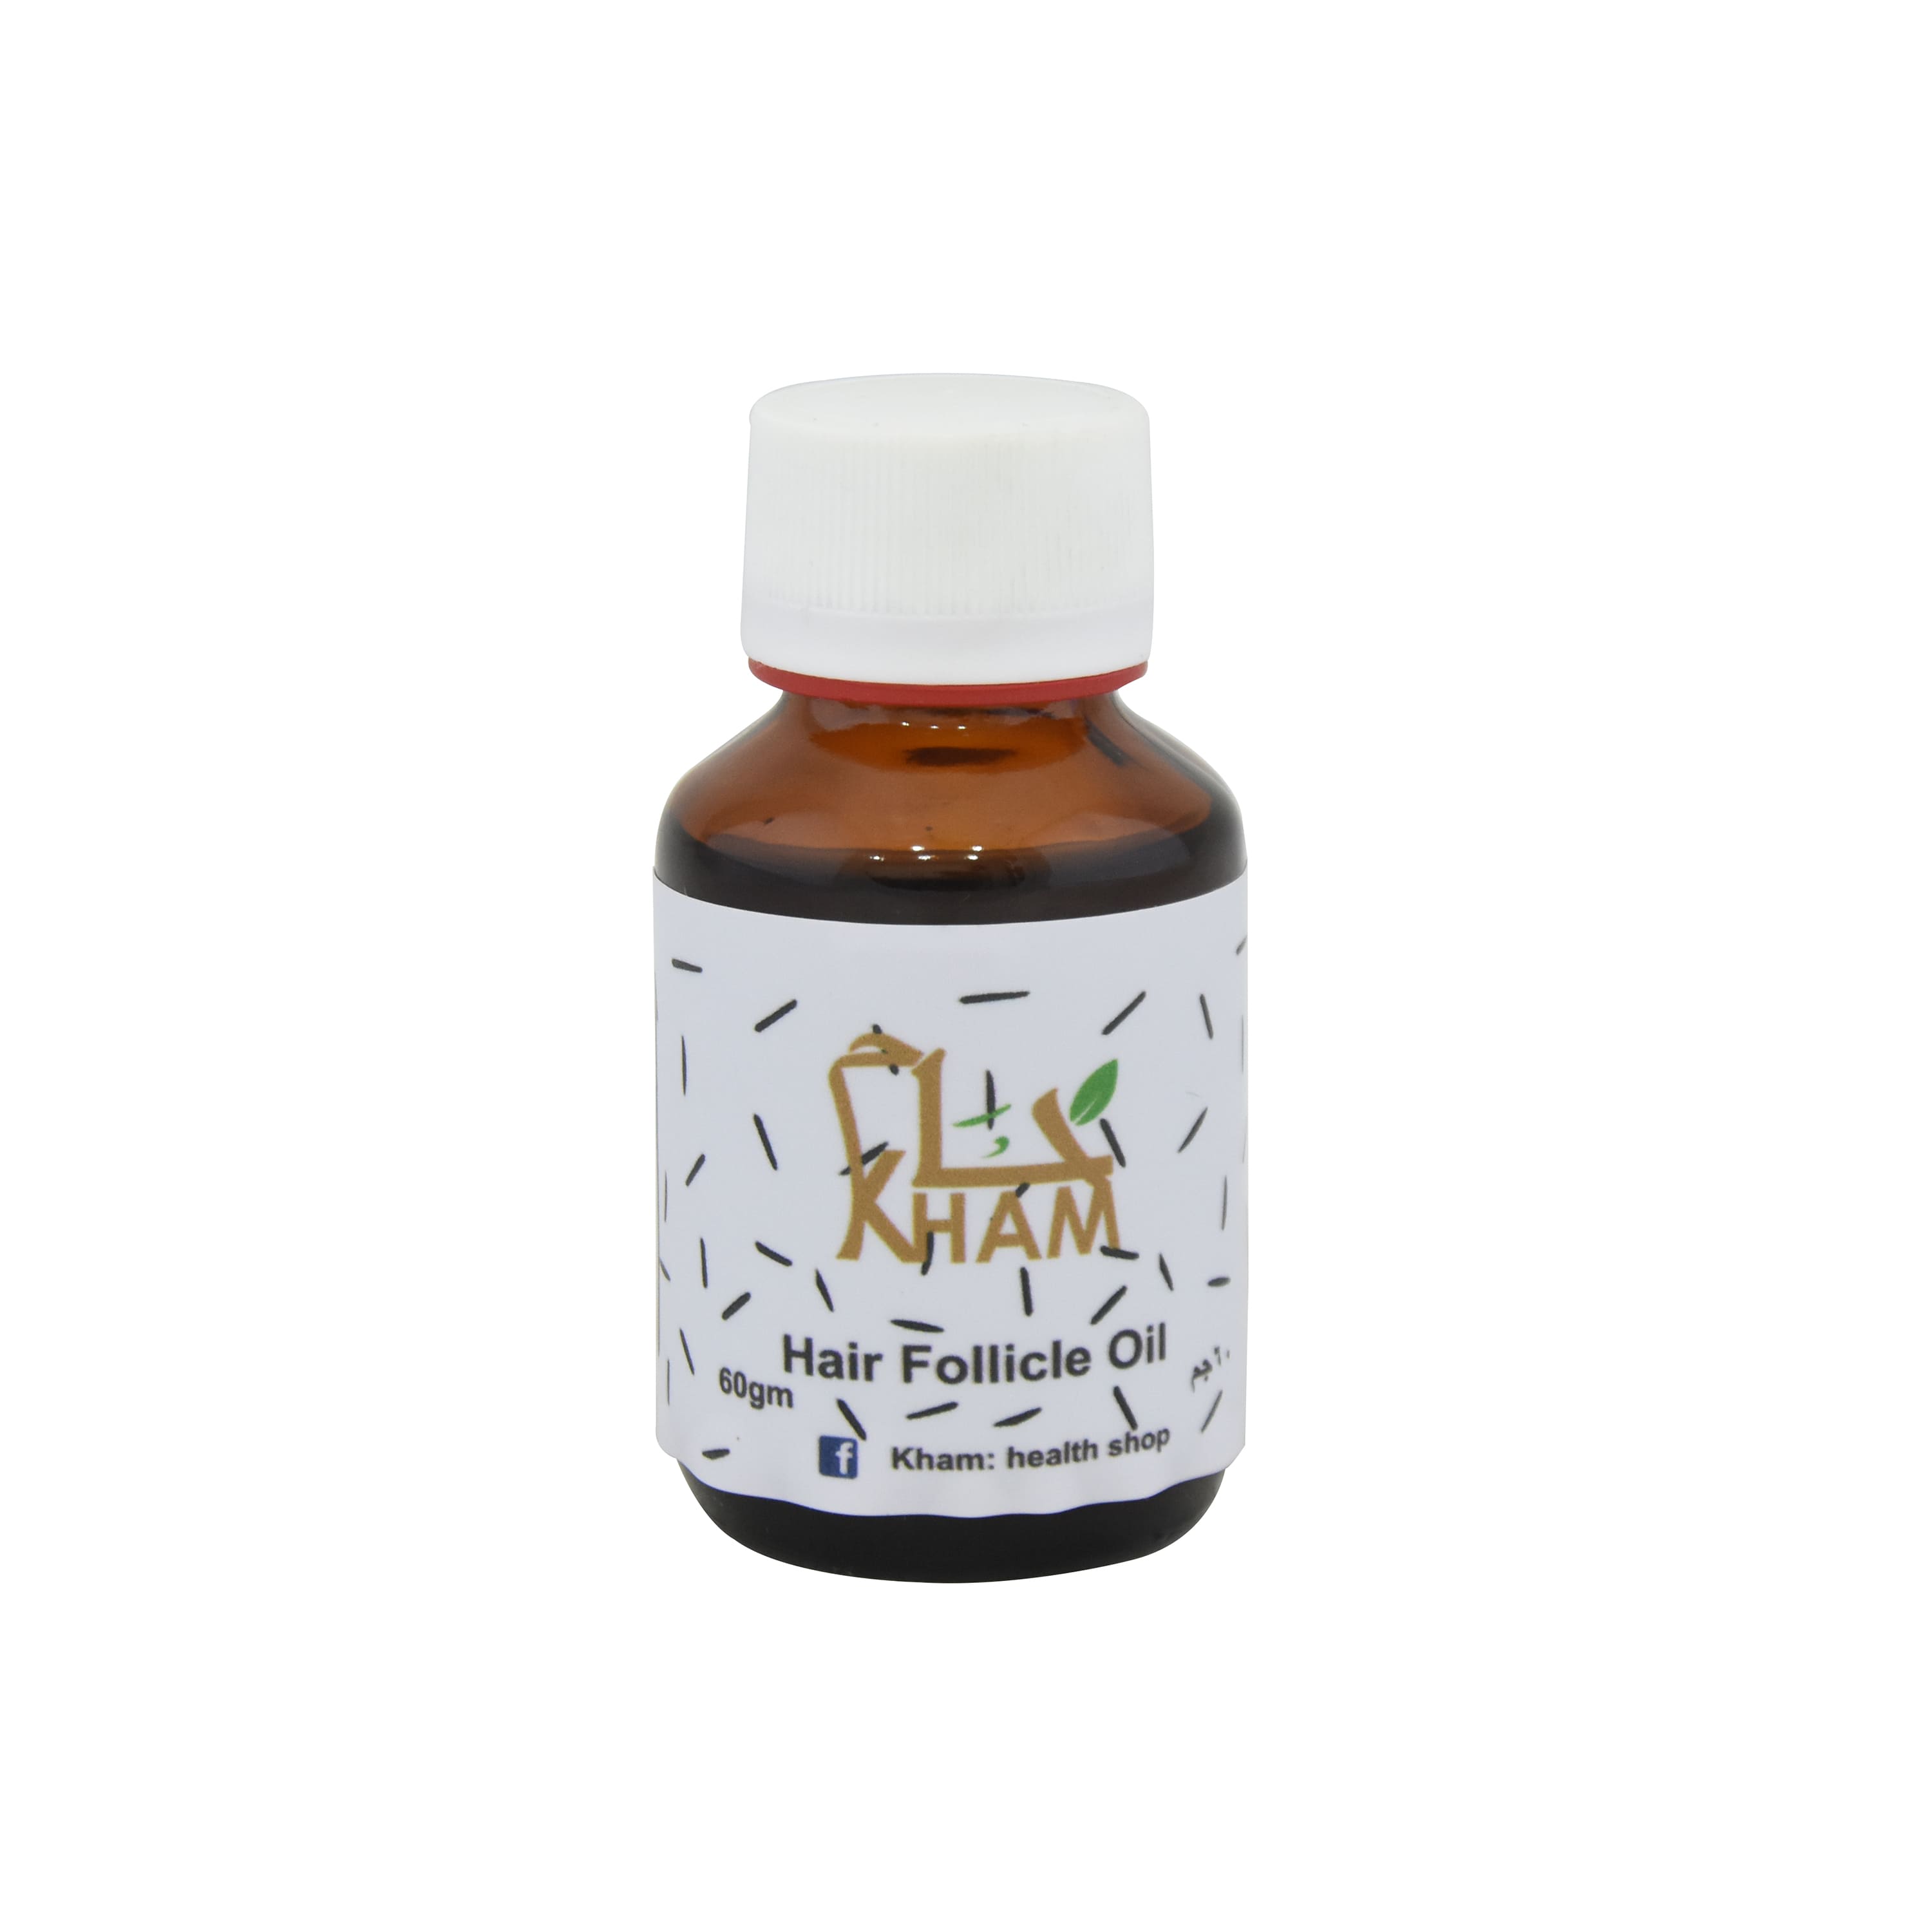 Kham Hair Follicle Oil (60 ml) for stimulating hair growth